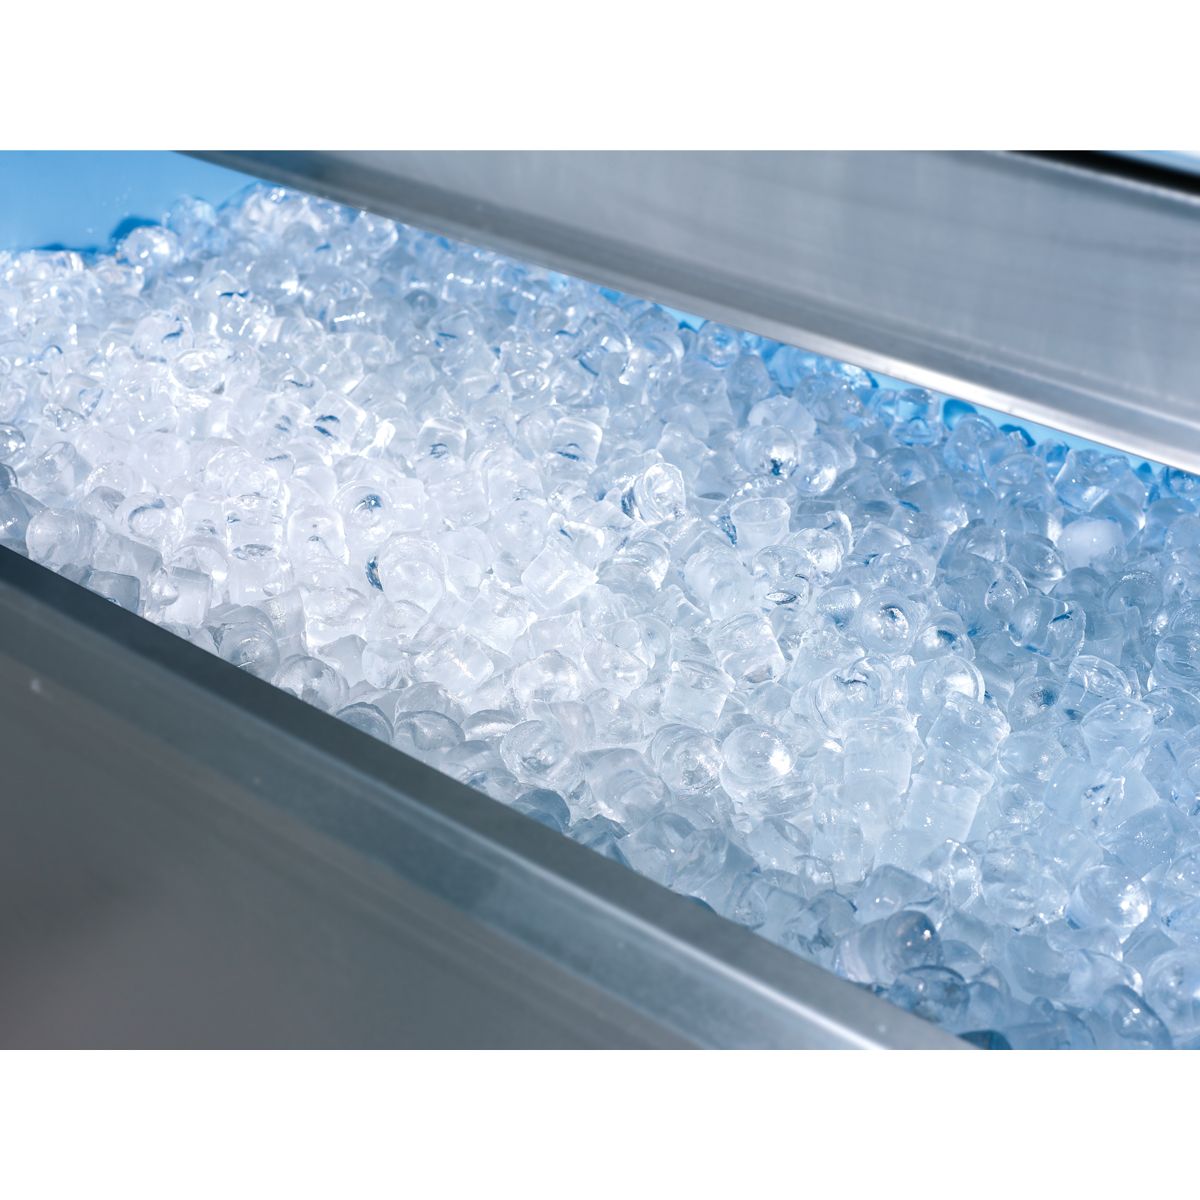 Máquina comercial para hacer hielo de 120 libras/24 horas con capacidad de  hielo de 35 libras, 45 cubos de hielo transparentes listos en 11-20  minutos, máquina de hielo grande independiente de acero : Electrodomésticos  